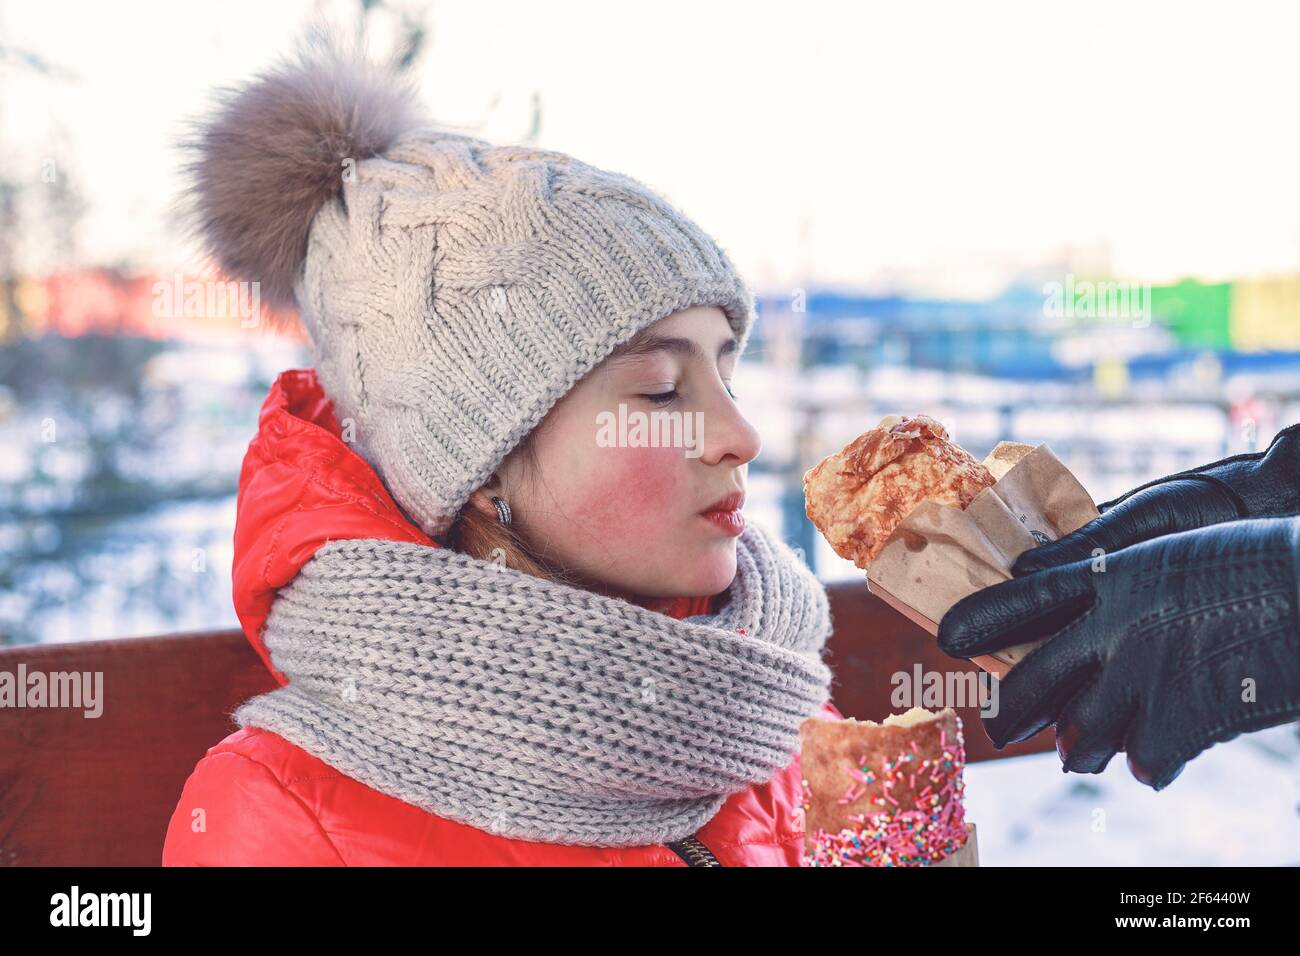 Joven hermosa chica caucásica vestida con una chaqueta brillante comiendo un pastel colorido. Actividad al aire libre en invierno, infancia feliz. Foto de stock